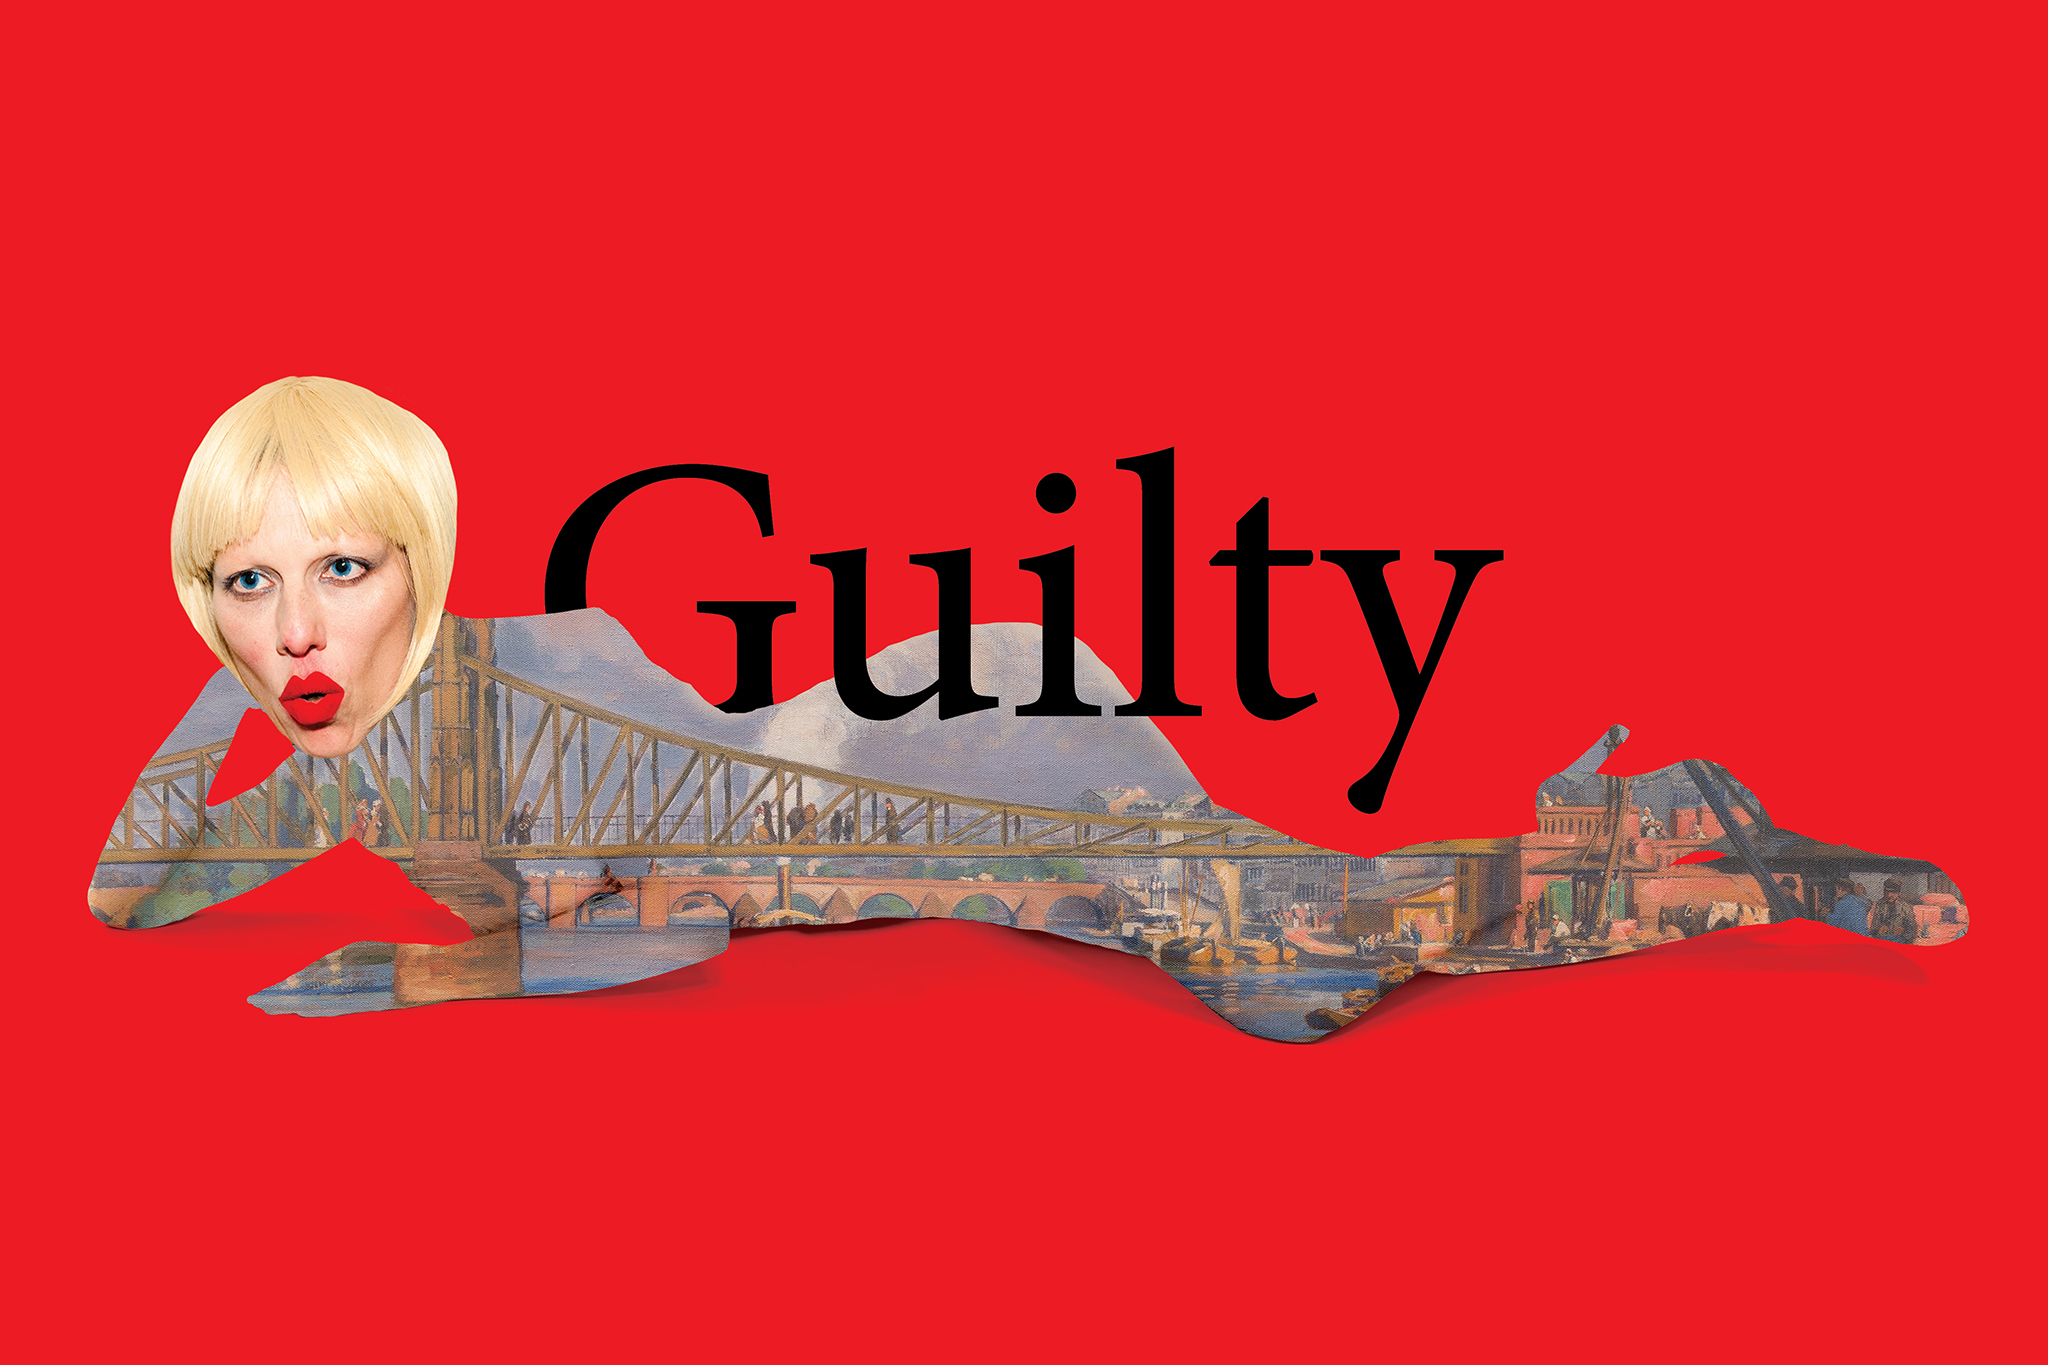 Idit Herman | Guilty Pleasure | Design: Matan Shalita